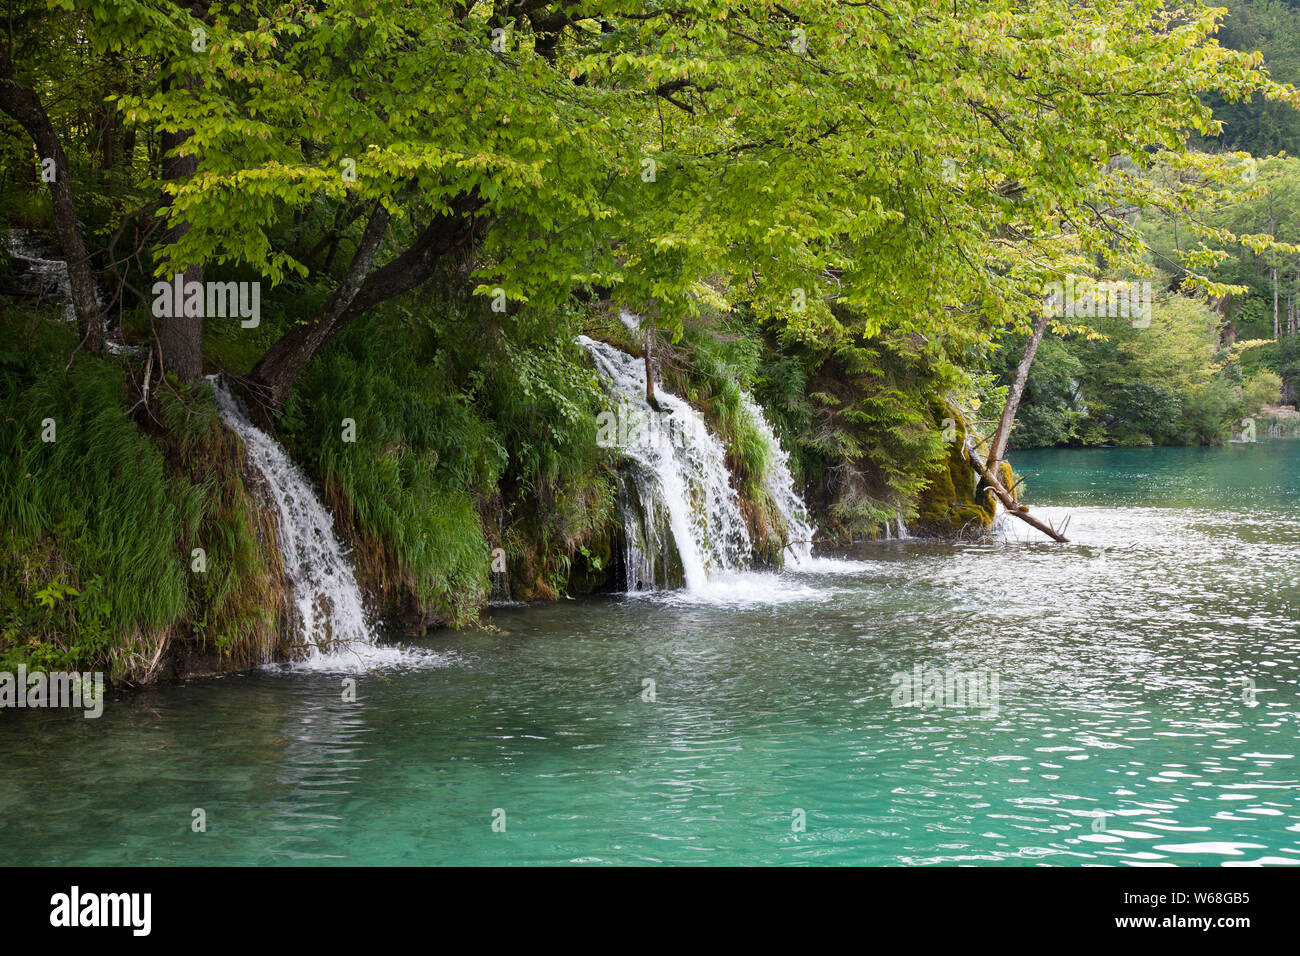 Chambre des cascades, le parc national des Lacs de Plitvice, Croatie. Site du patrimoine mondial de l'UNESCO, cette merveille naturelle contient 16 lacs reliés par des rivières Banque D'Images